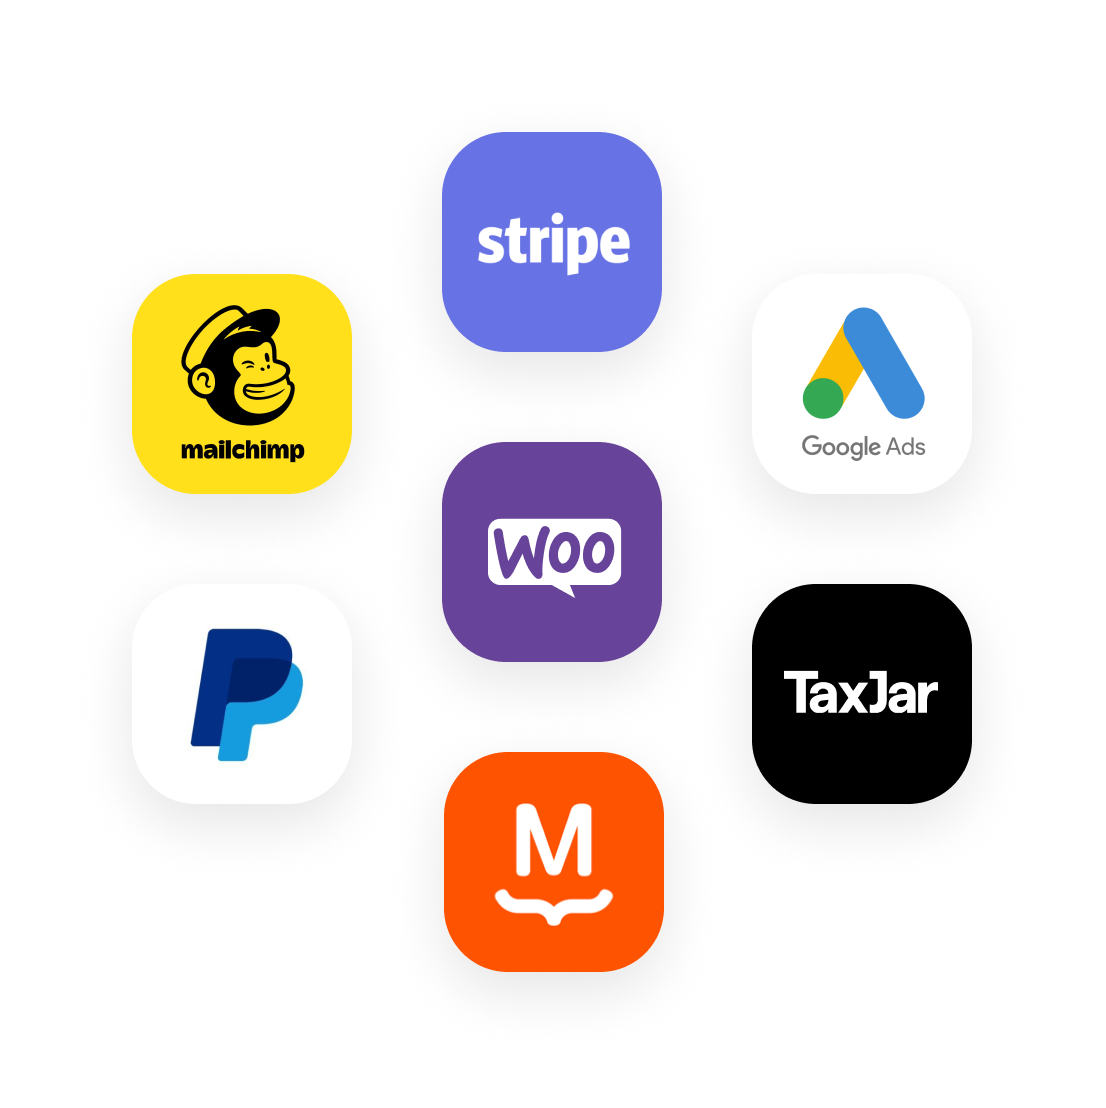 Logo's voor een selectie van producten die compatibel zijn met WooCommerce: Stripe, Google Ads, TaxJar, MailChimp, PayPal en MailPoet.